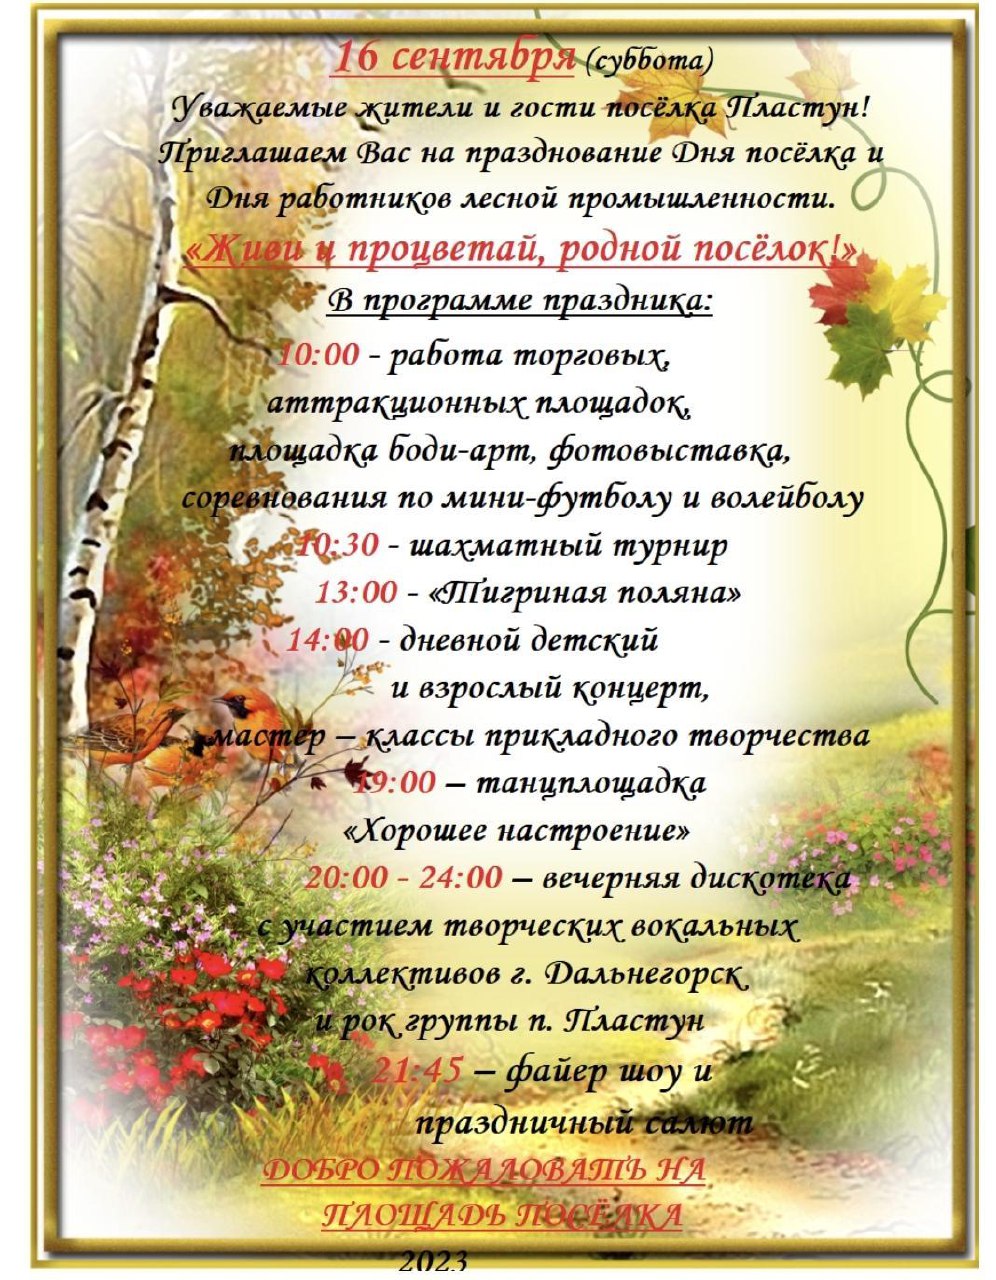 16 сентября День посёлка Пластун и День работников лесной промышленности!.